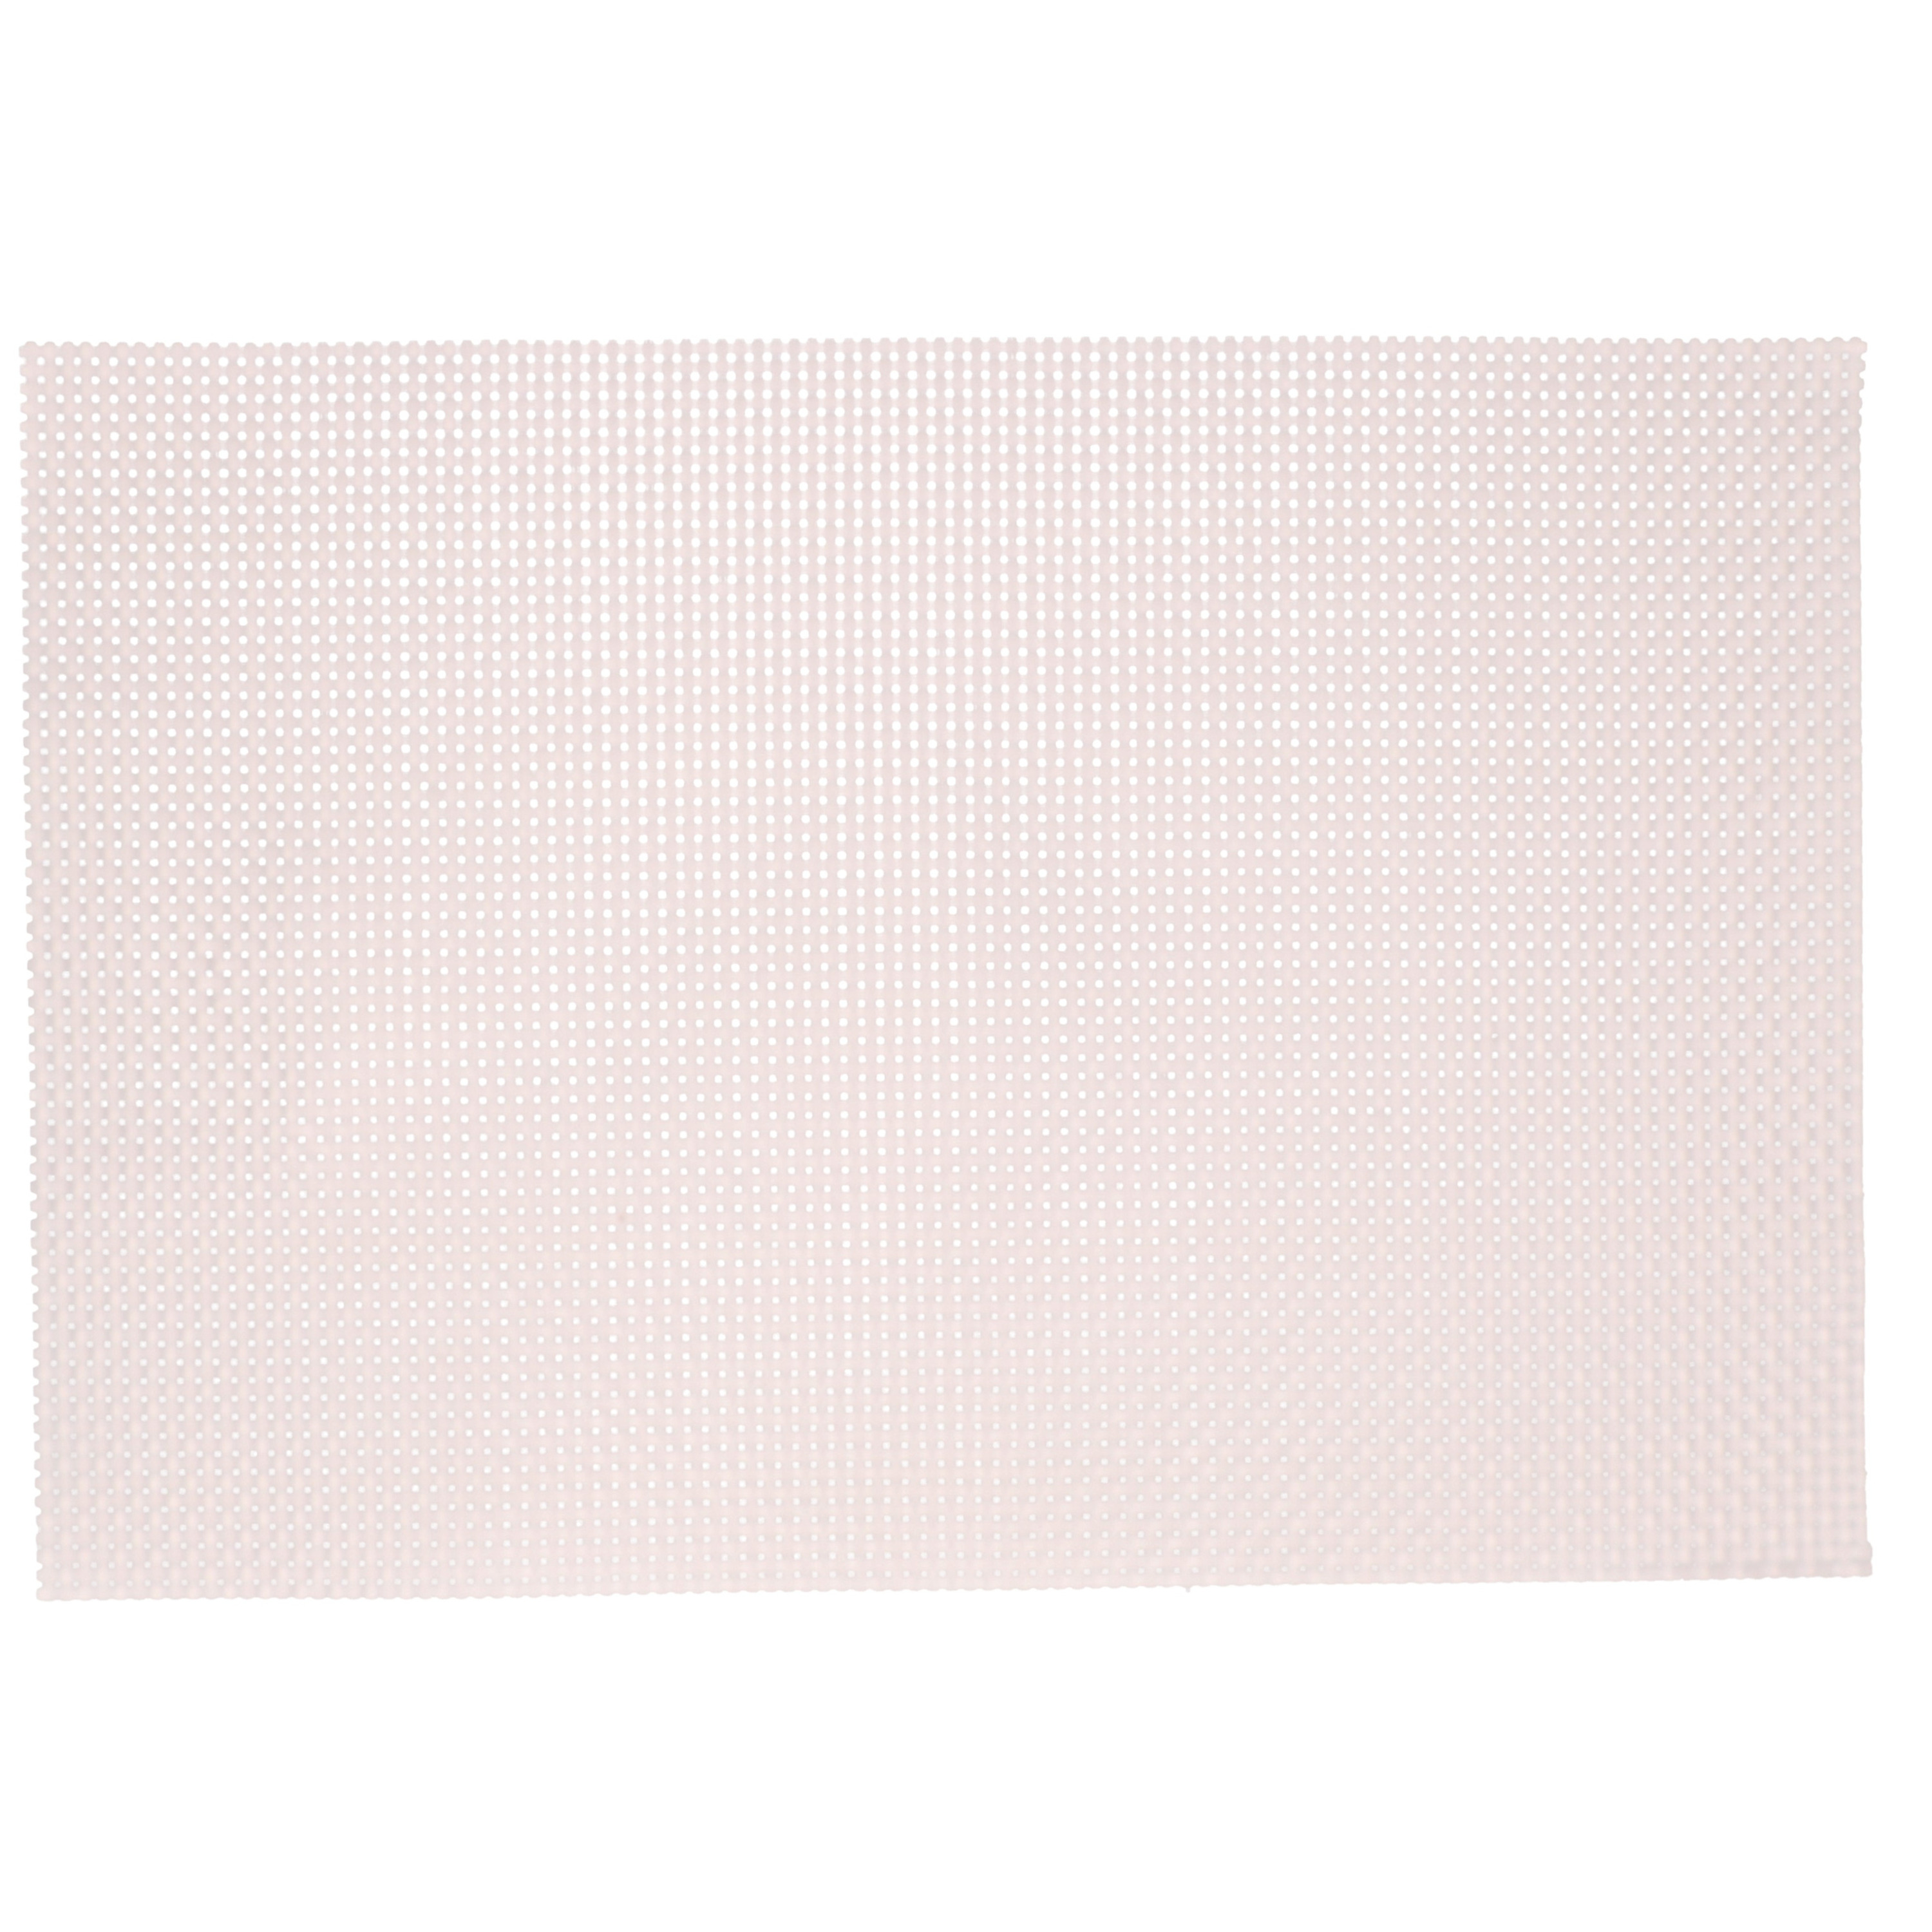 Kesper 8x Rechthoekige placemats lichtroze parelmoer glans geweven 29 x 43 cm -